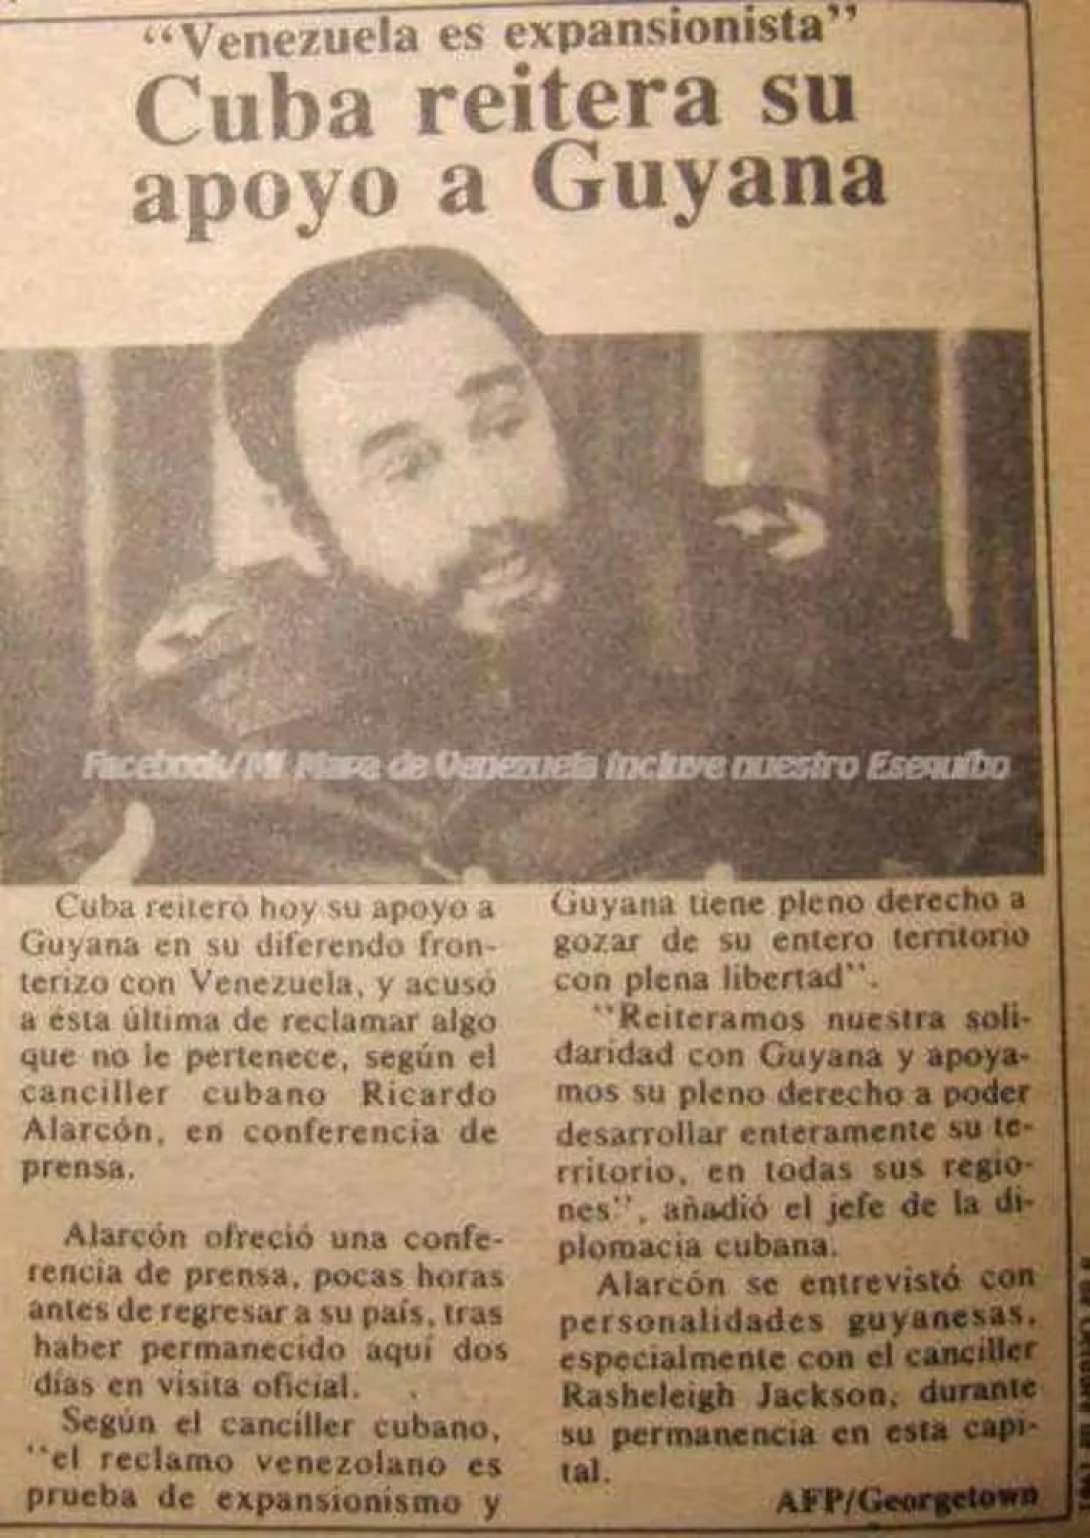 Nota publicada en octubre de 1981 por el "Diario de Caracas".